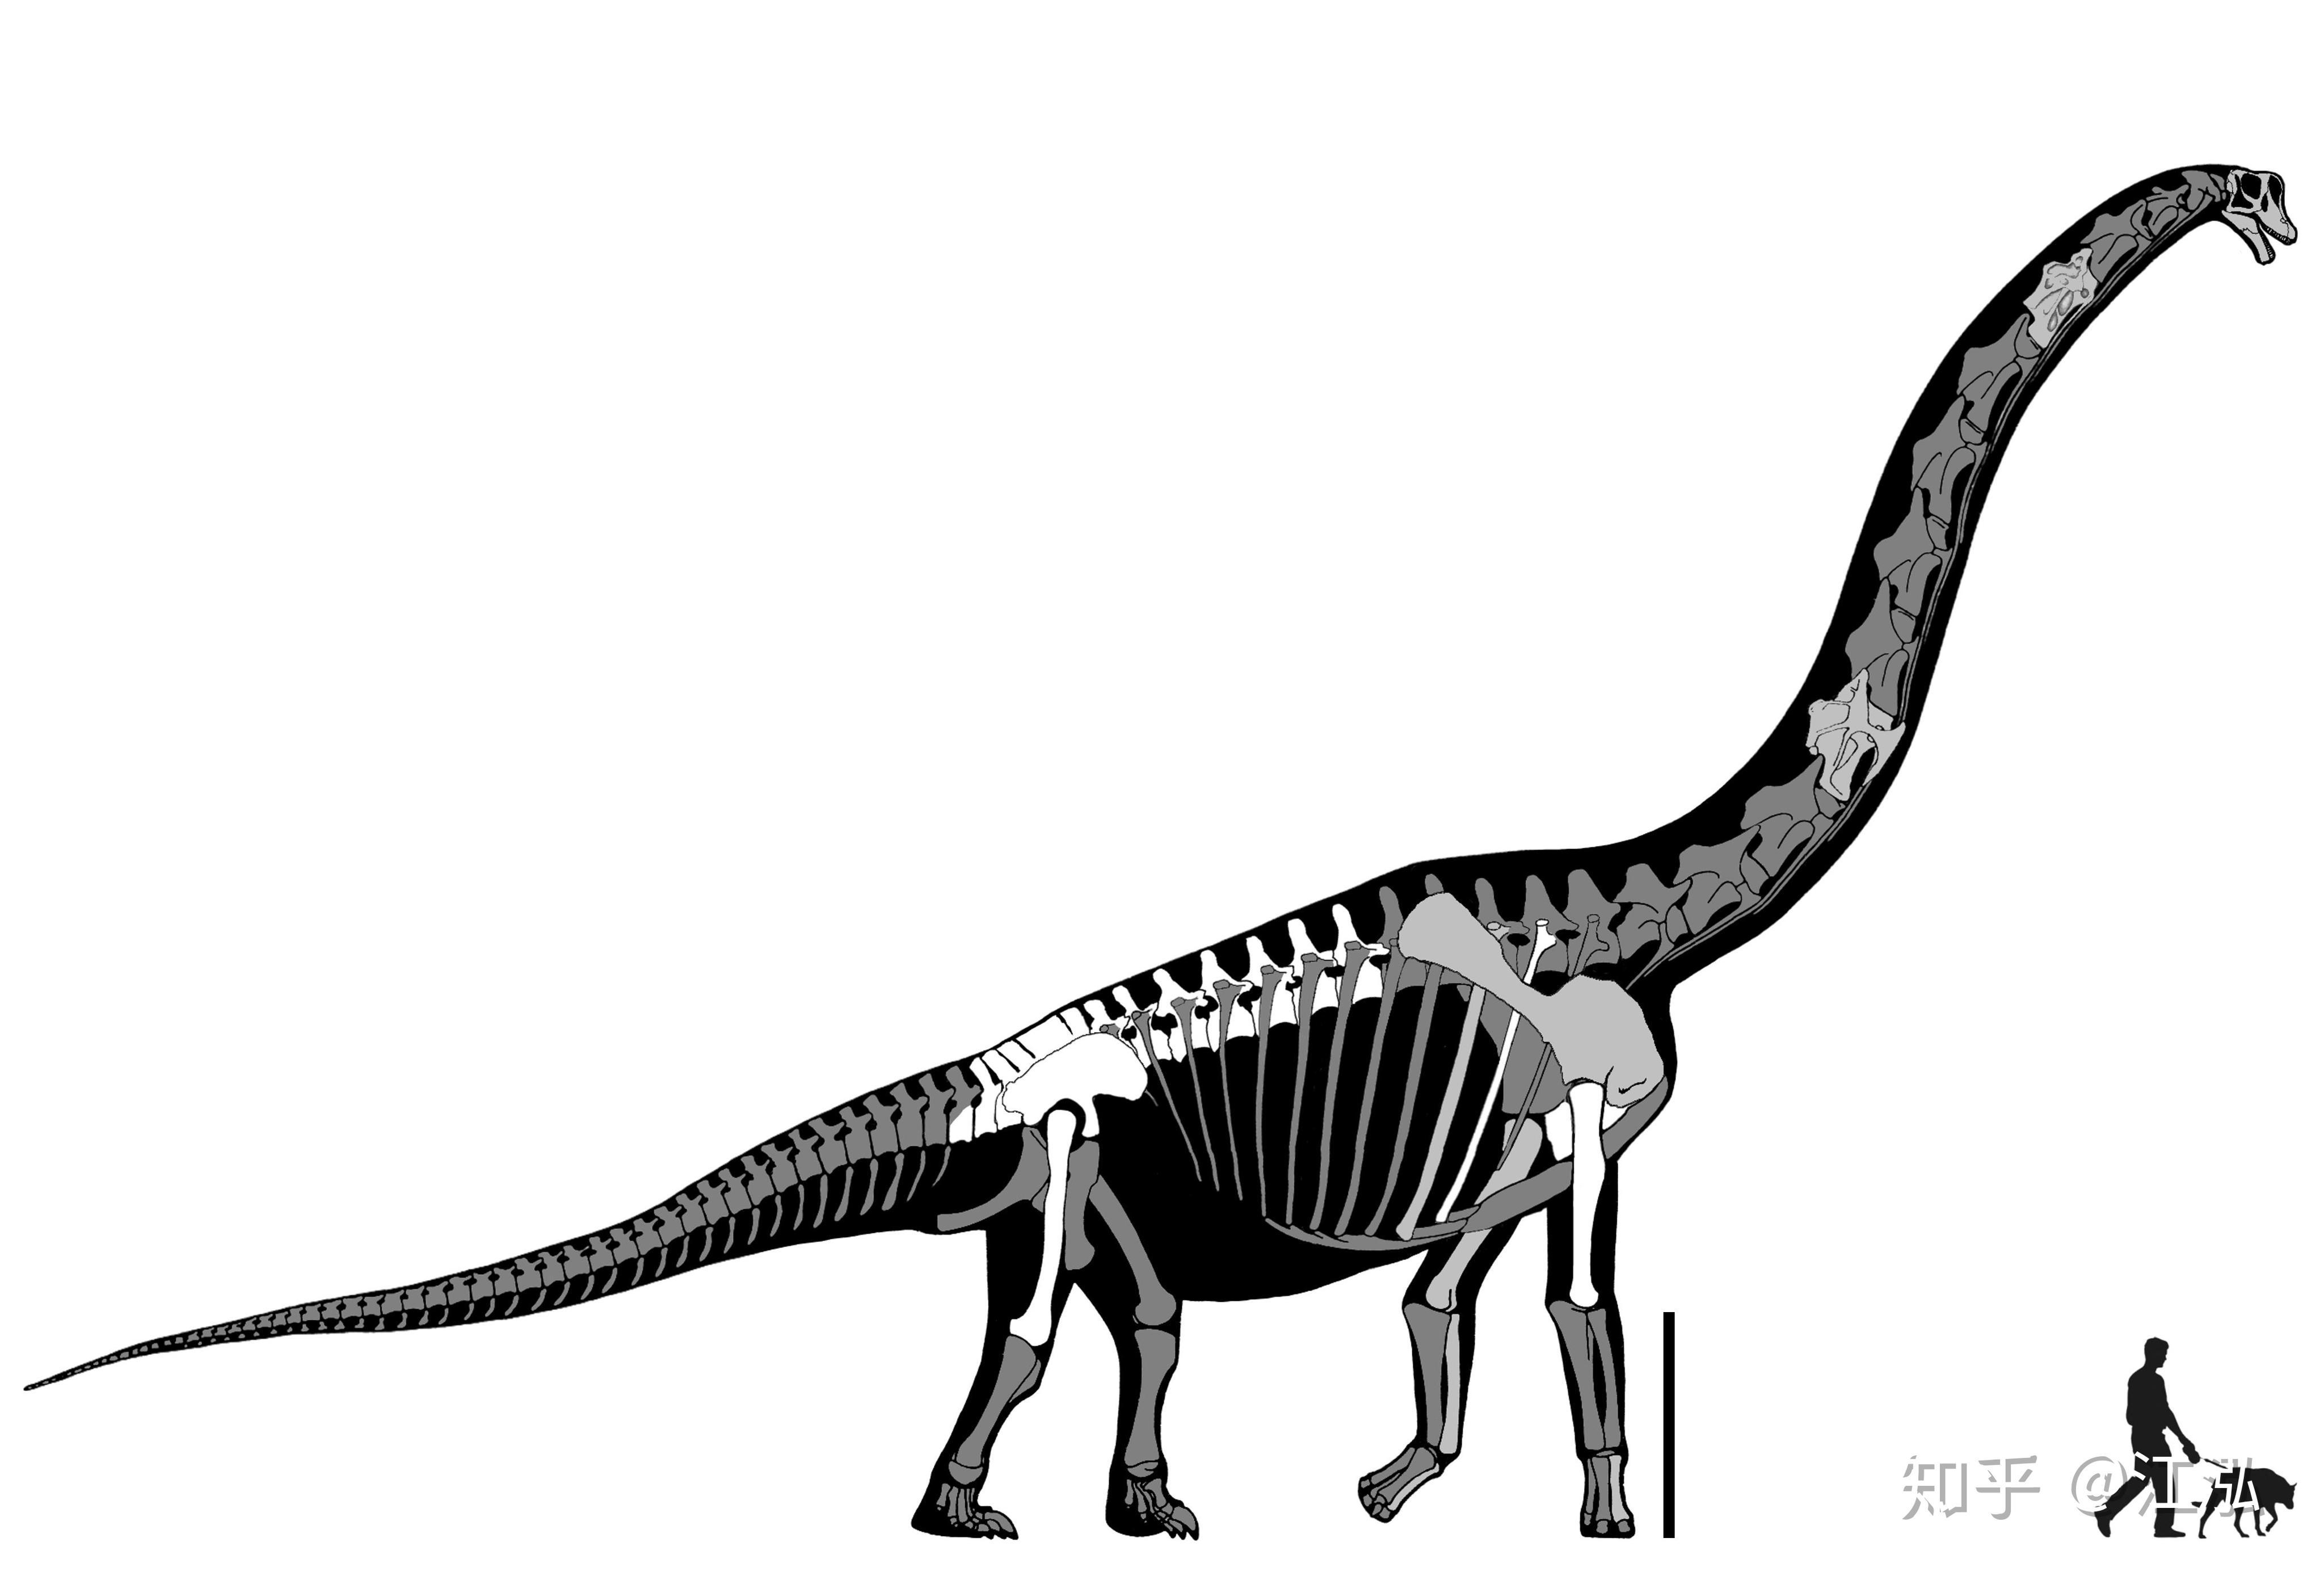 腕龙,梁龙,马门溪龙等长脖子长尾巴的恐龙,外形区别到底明显在哪里呢?